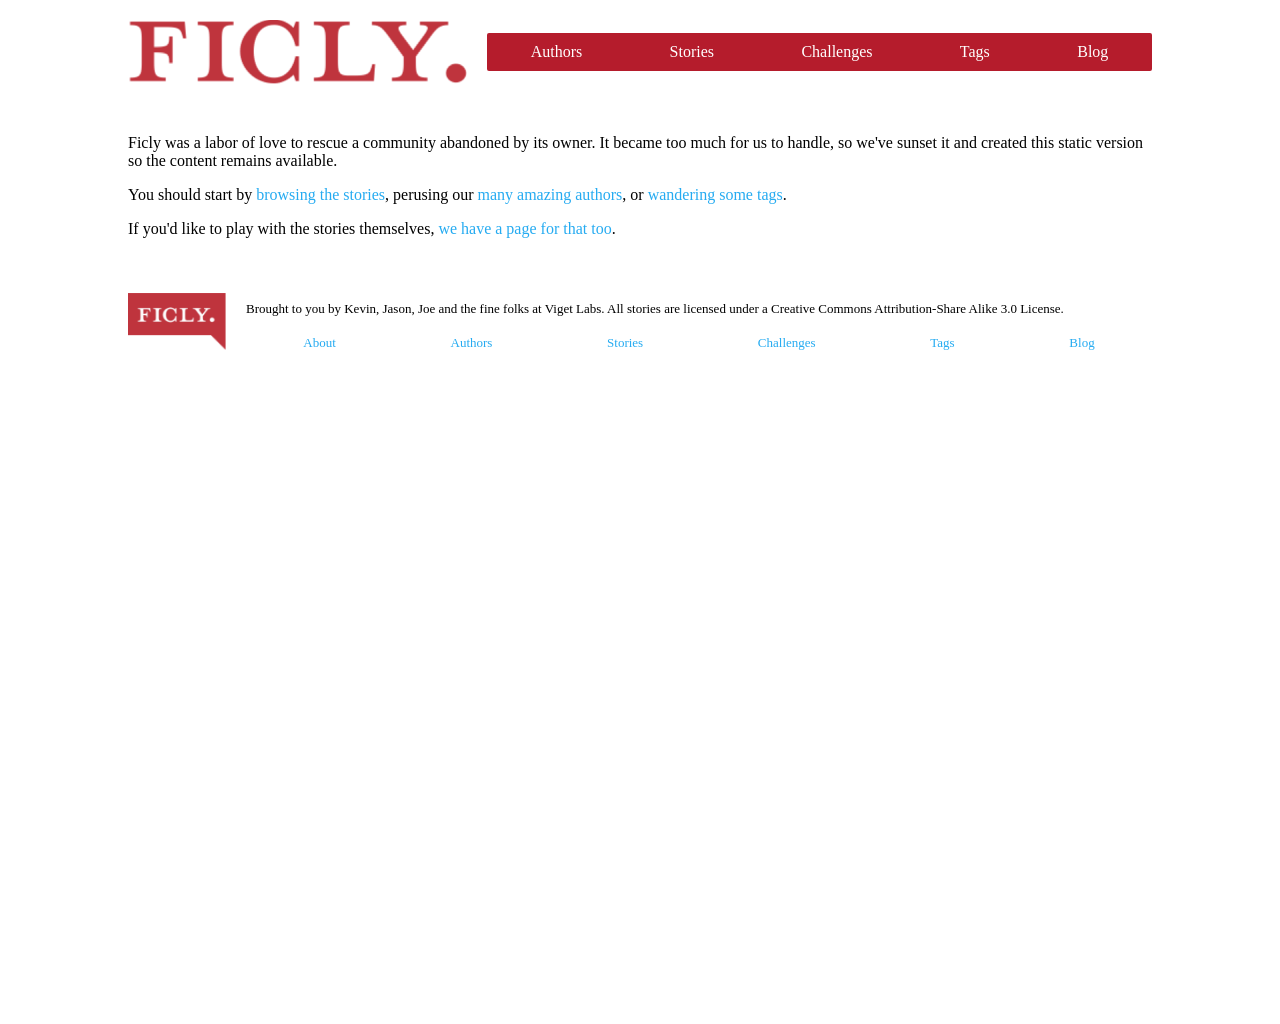 ficly.com